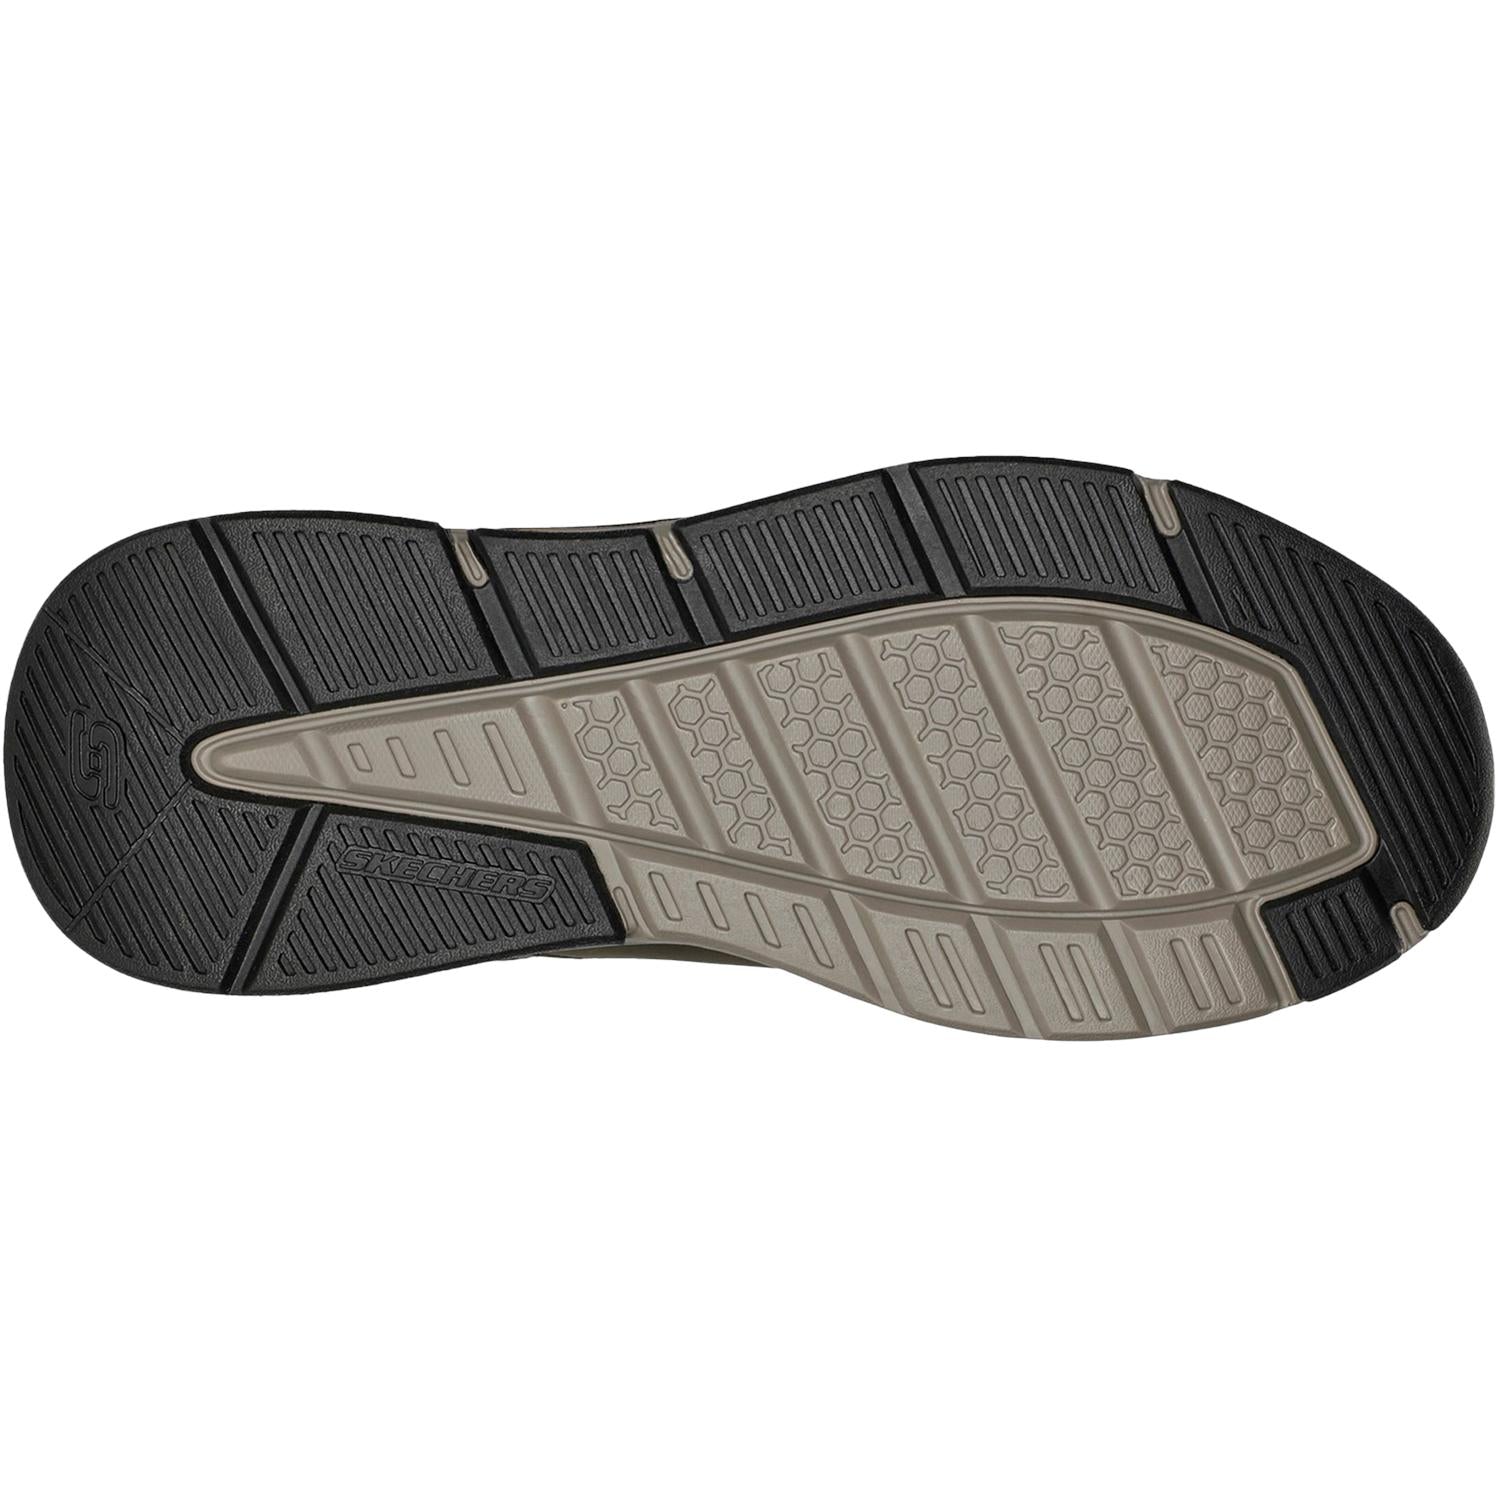 Skechers Benago - Hombre Shoe